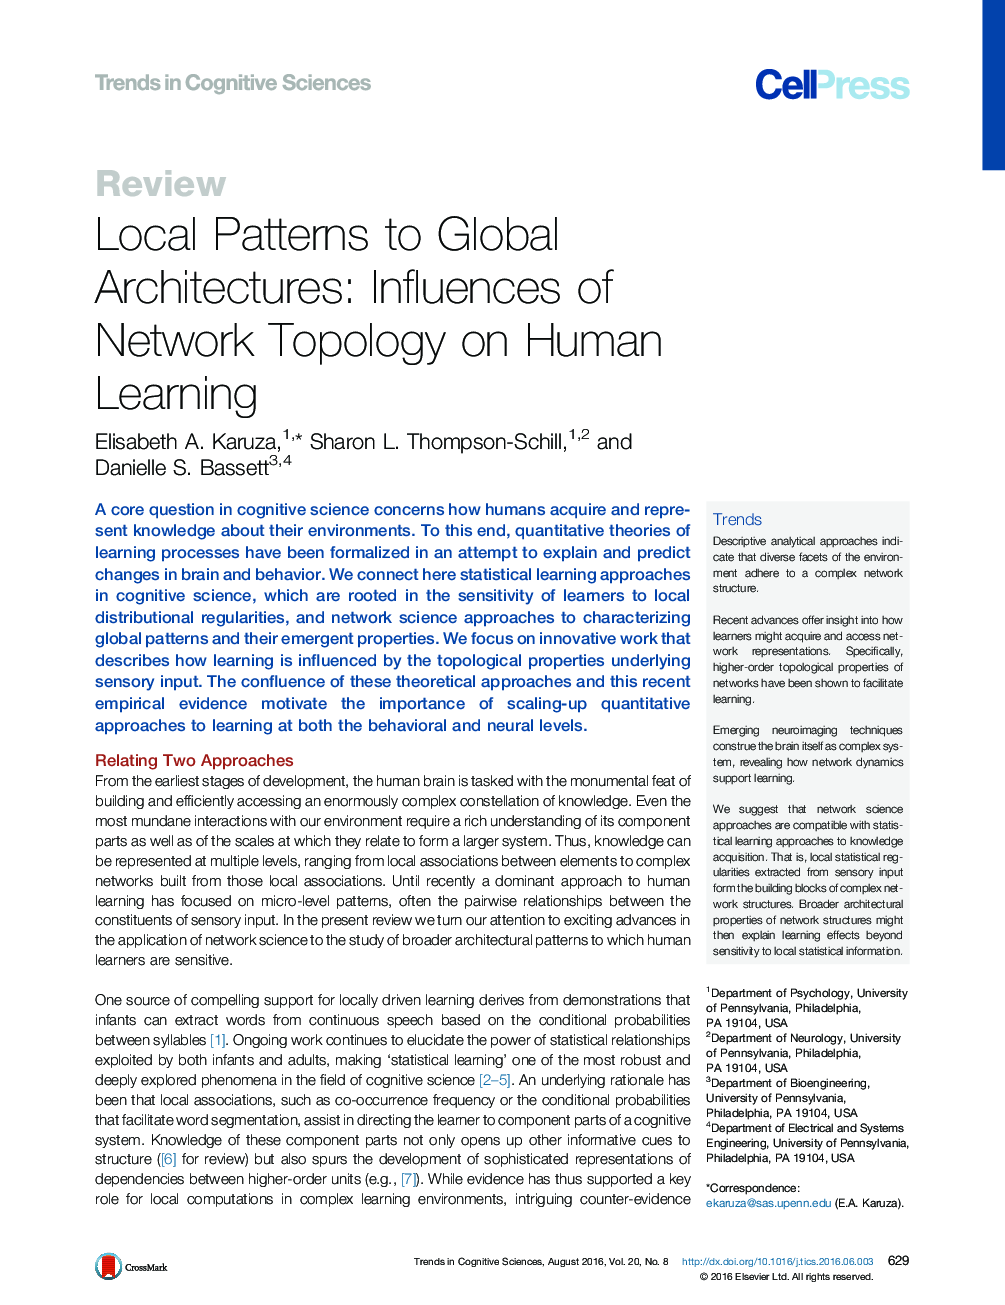 الگوهای محلی برای معماری جهانی: تاثیر توپولوژی شبکه بر یادگیری انسان